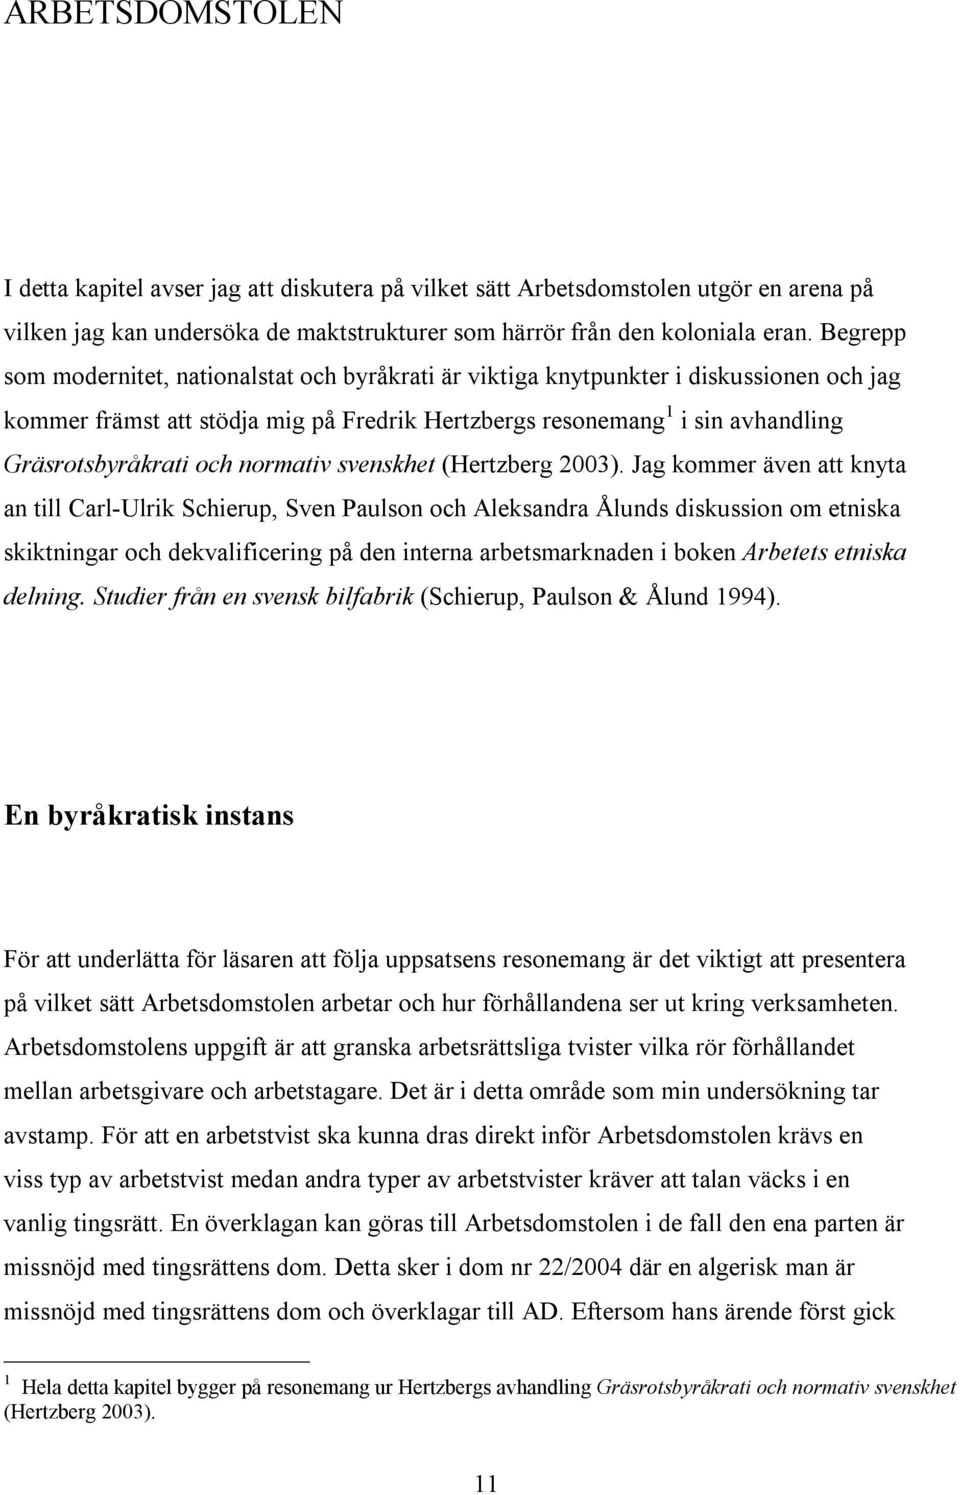 normativ svenskhet (Hertzberg 2003).